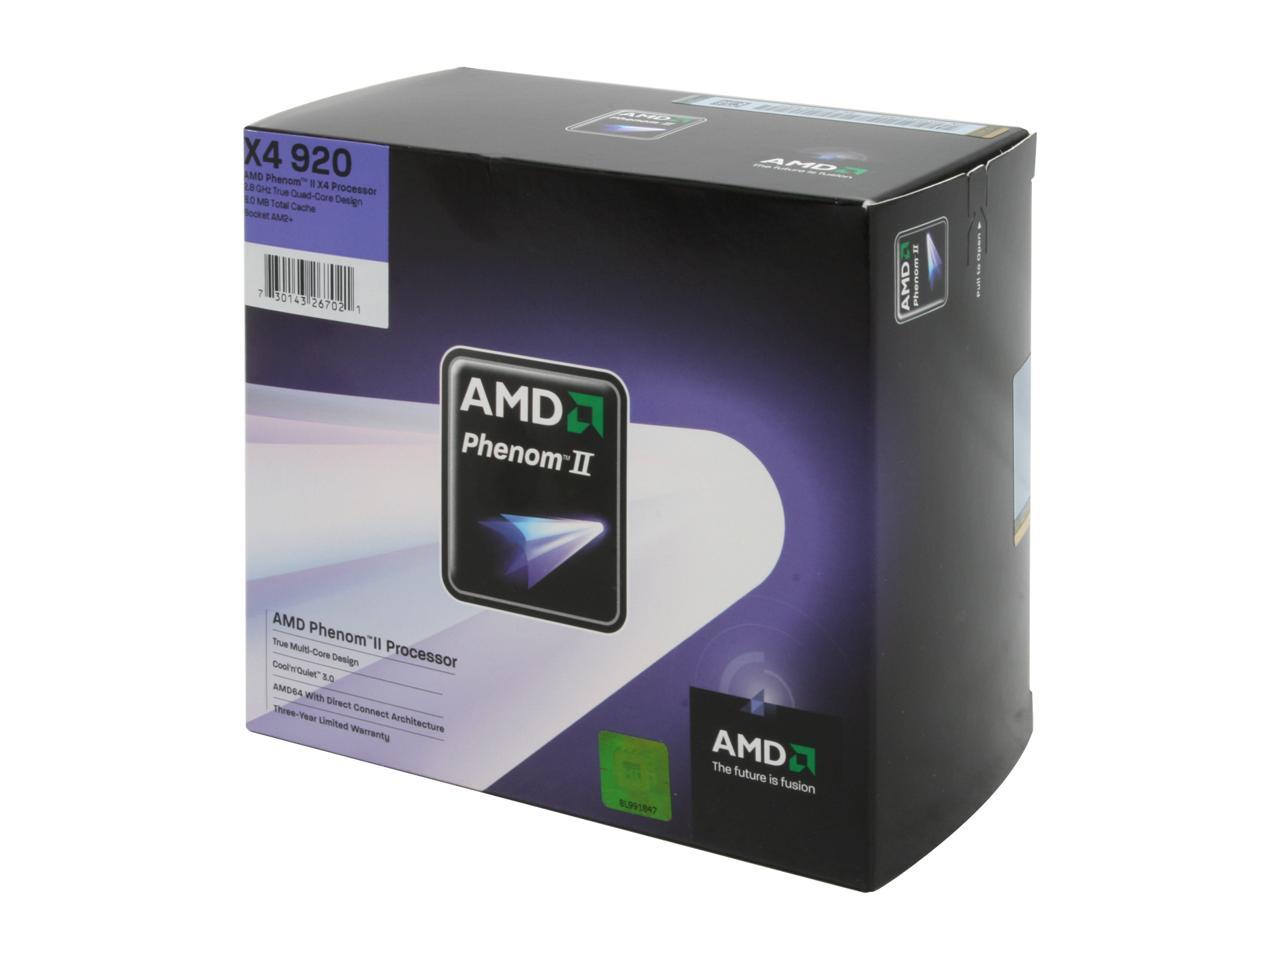 AMD Phenom II X4 920 Quad-Core 2.8 GHz Socket AM2+ 125W HDX920XCGIBOX Processor